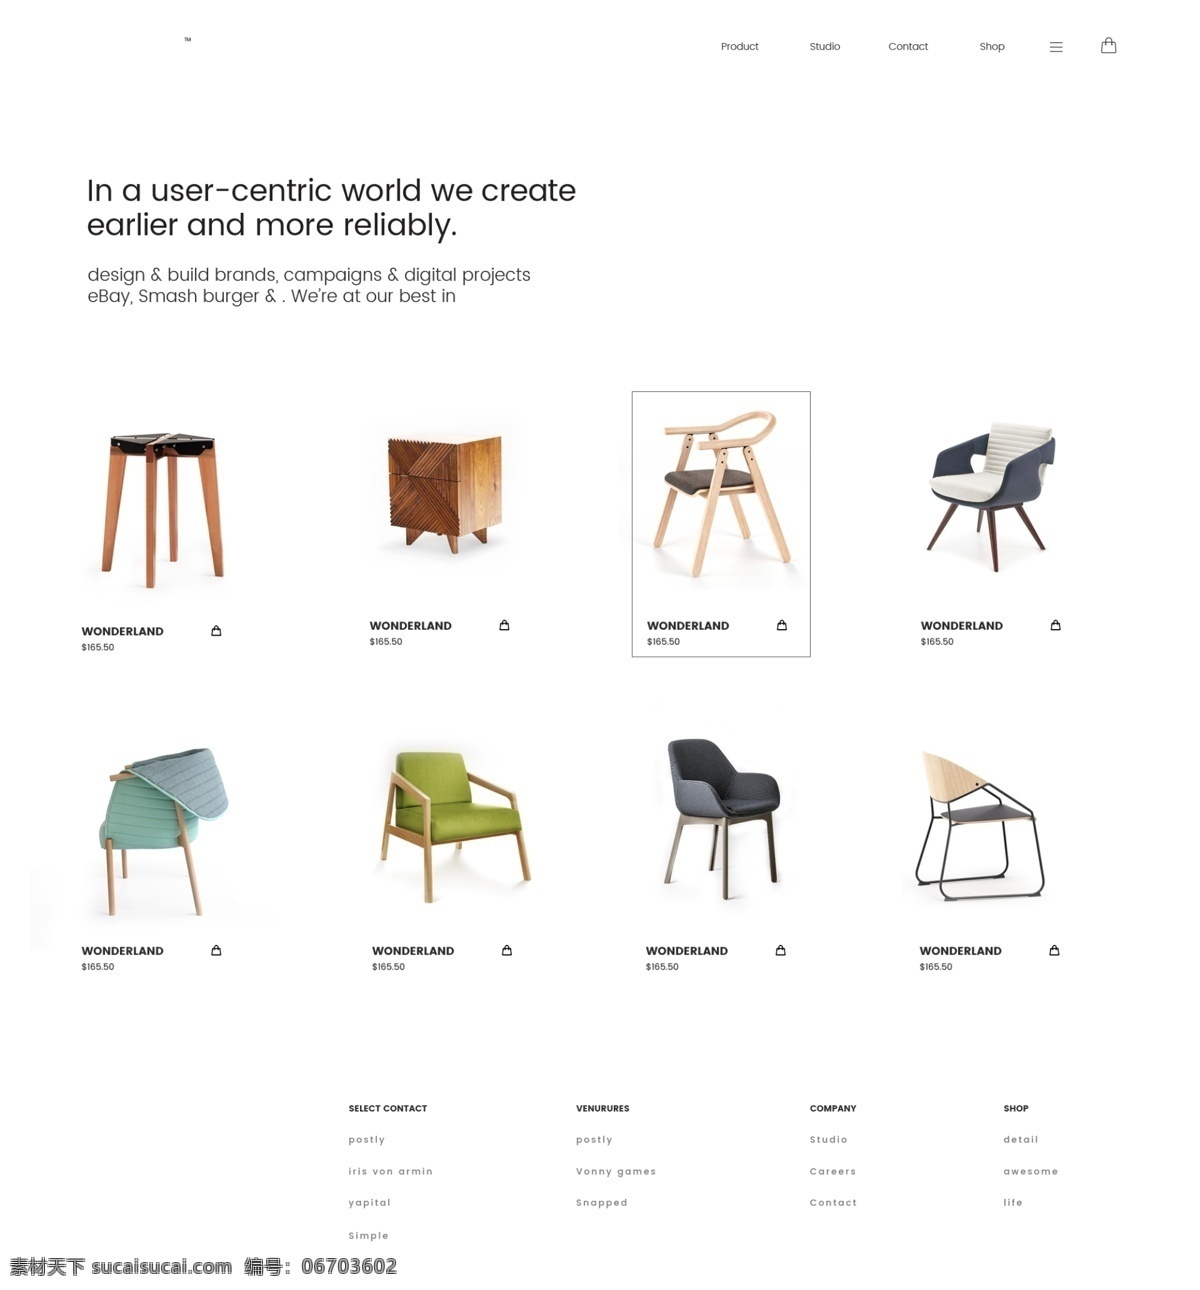 时尚 网 产品展示 列表 产品 商品 桌椅